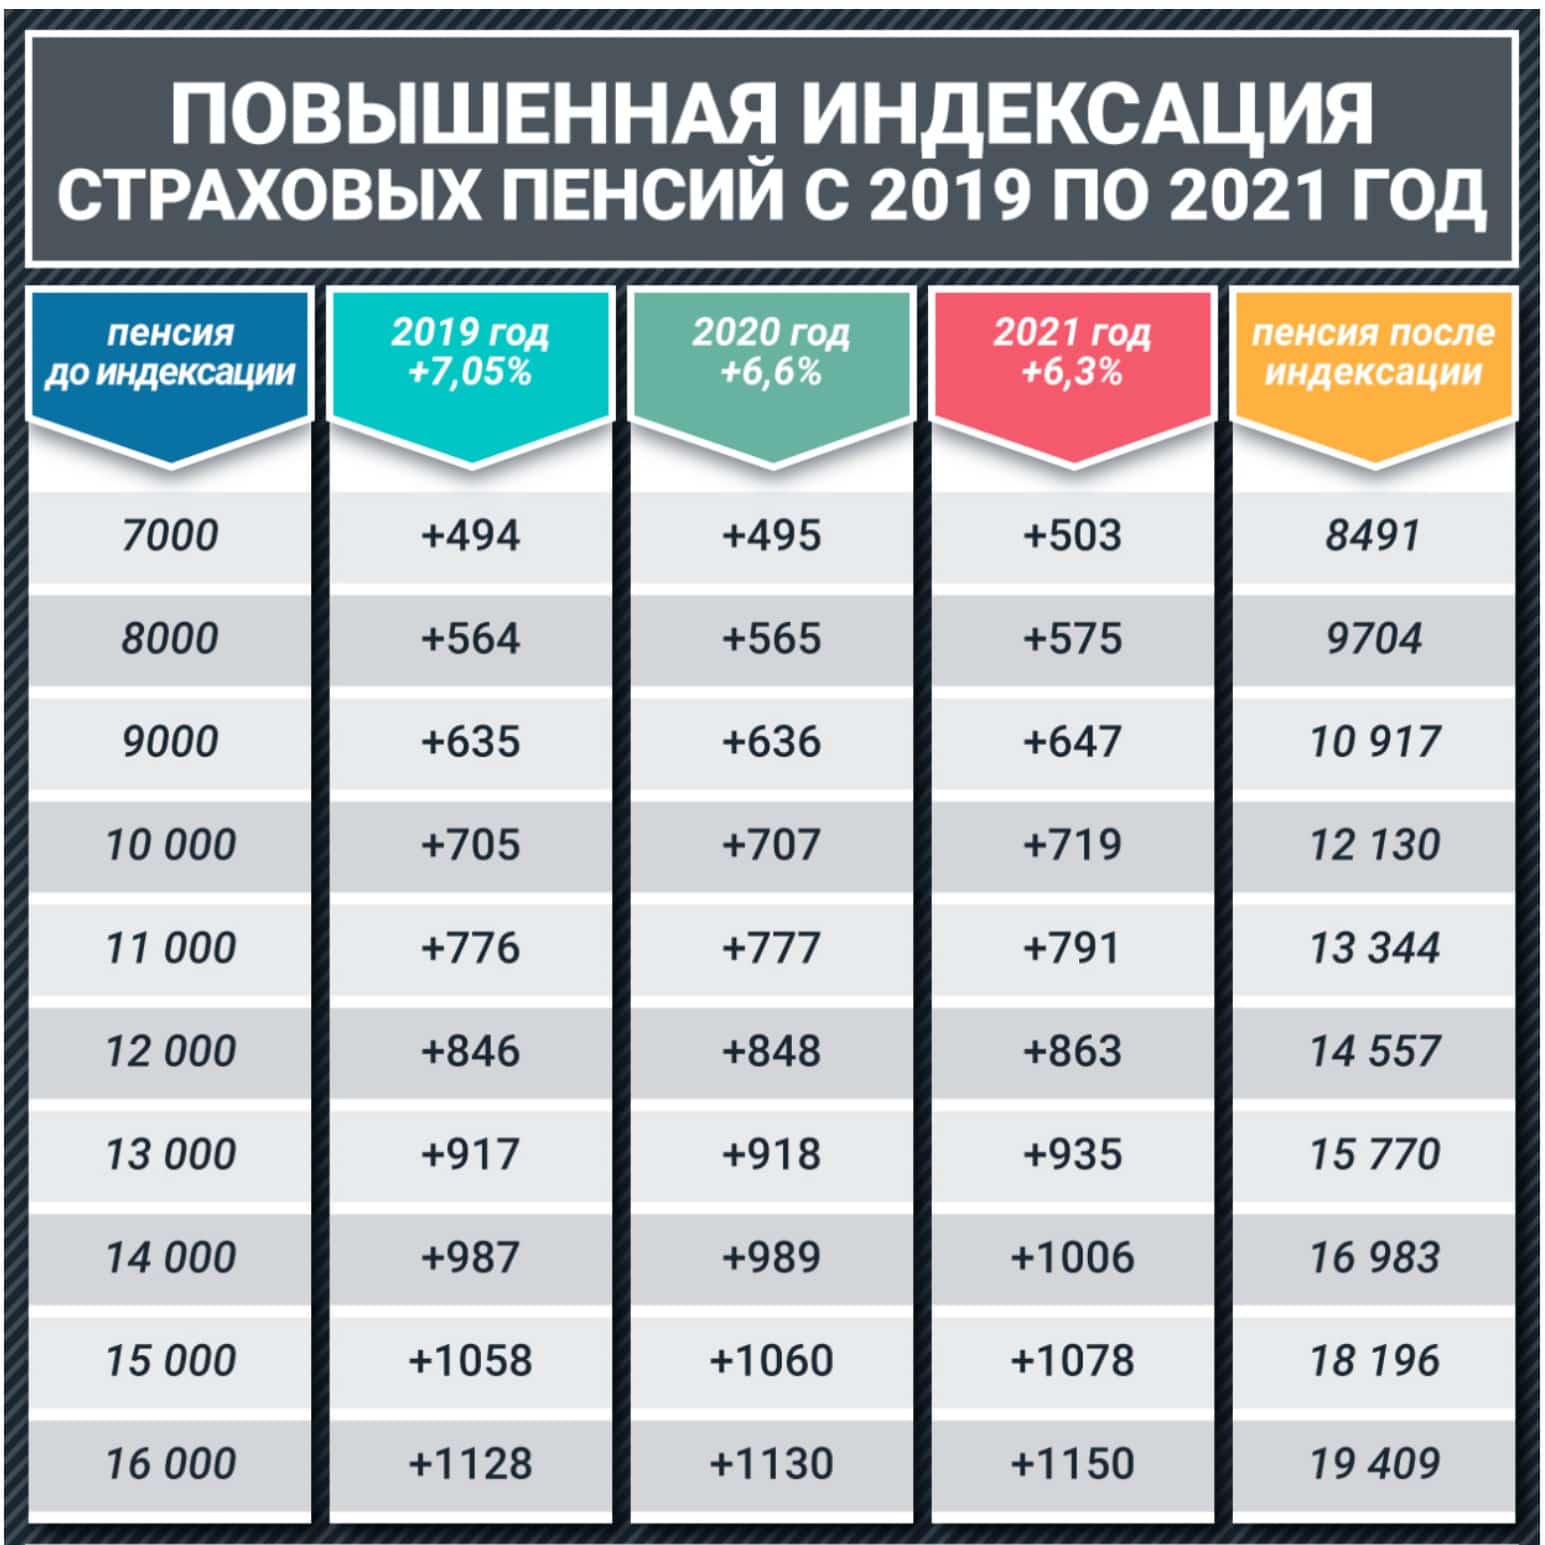 Минимальная пенсия в россии – кому положена и её размер?